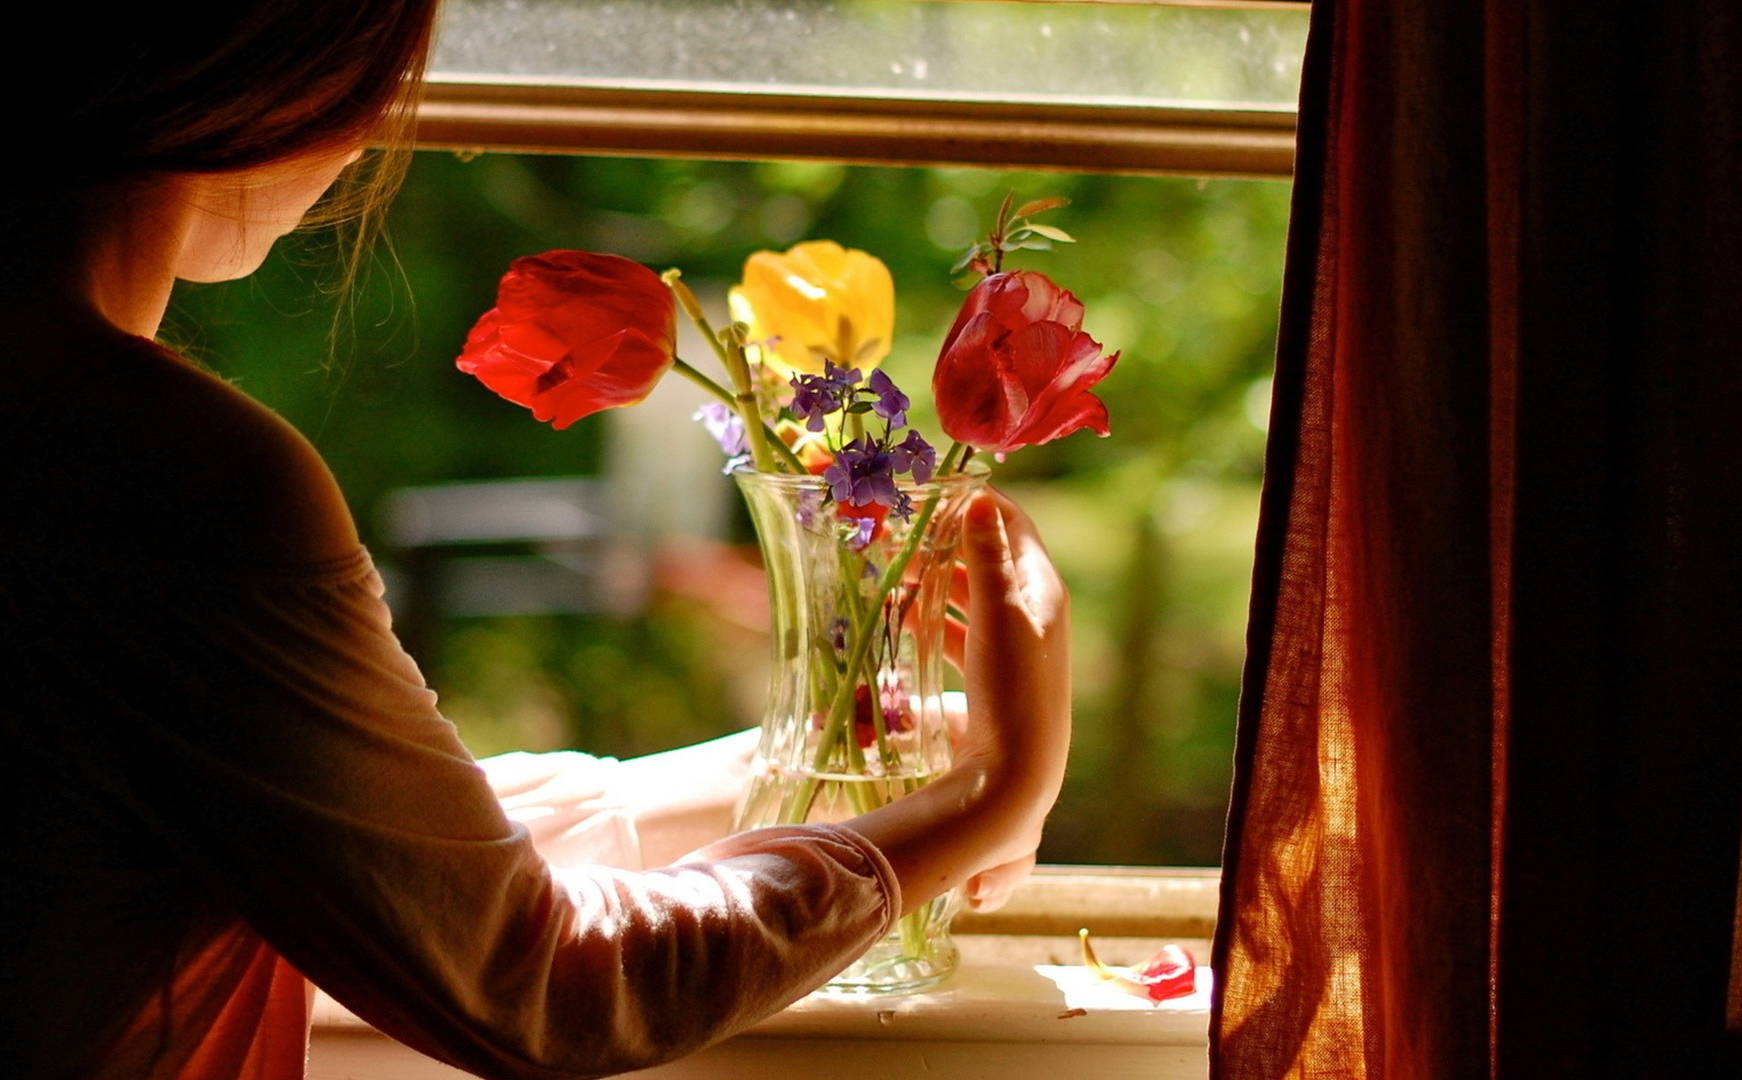 Дом где есть счастье. Цветы на окне. Девушка с цветами возле окна. Окно с цветами. Цветы на подоконнике вечером.